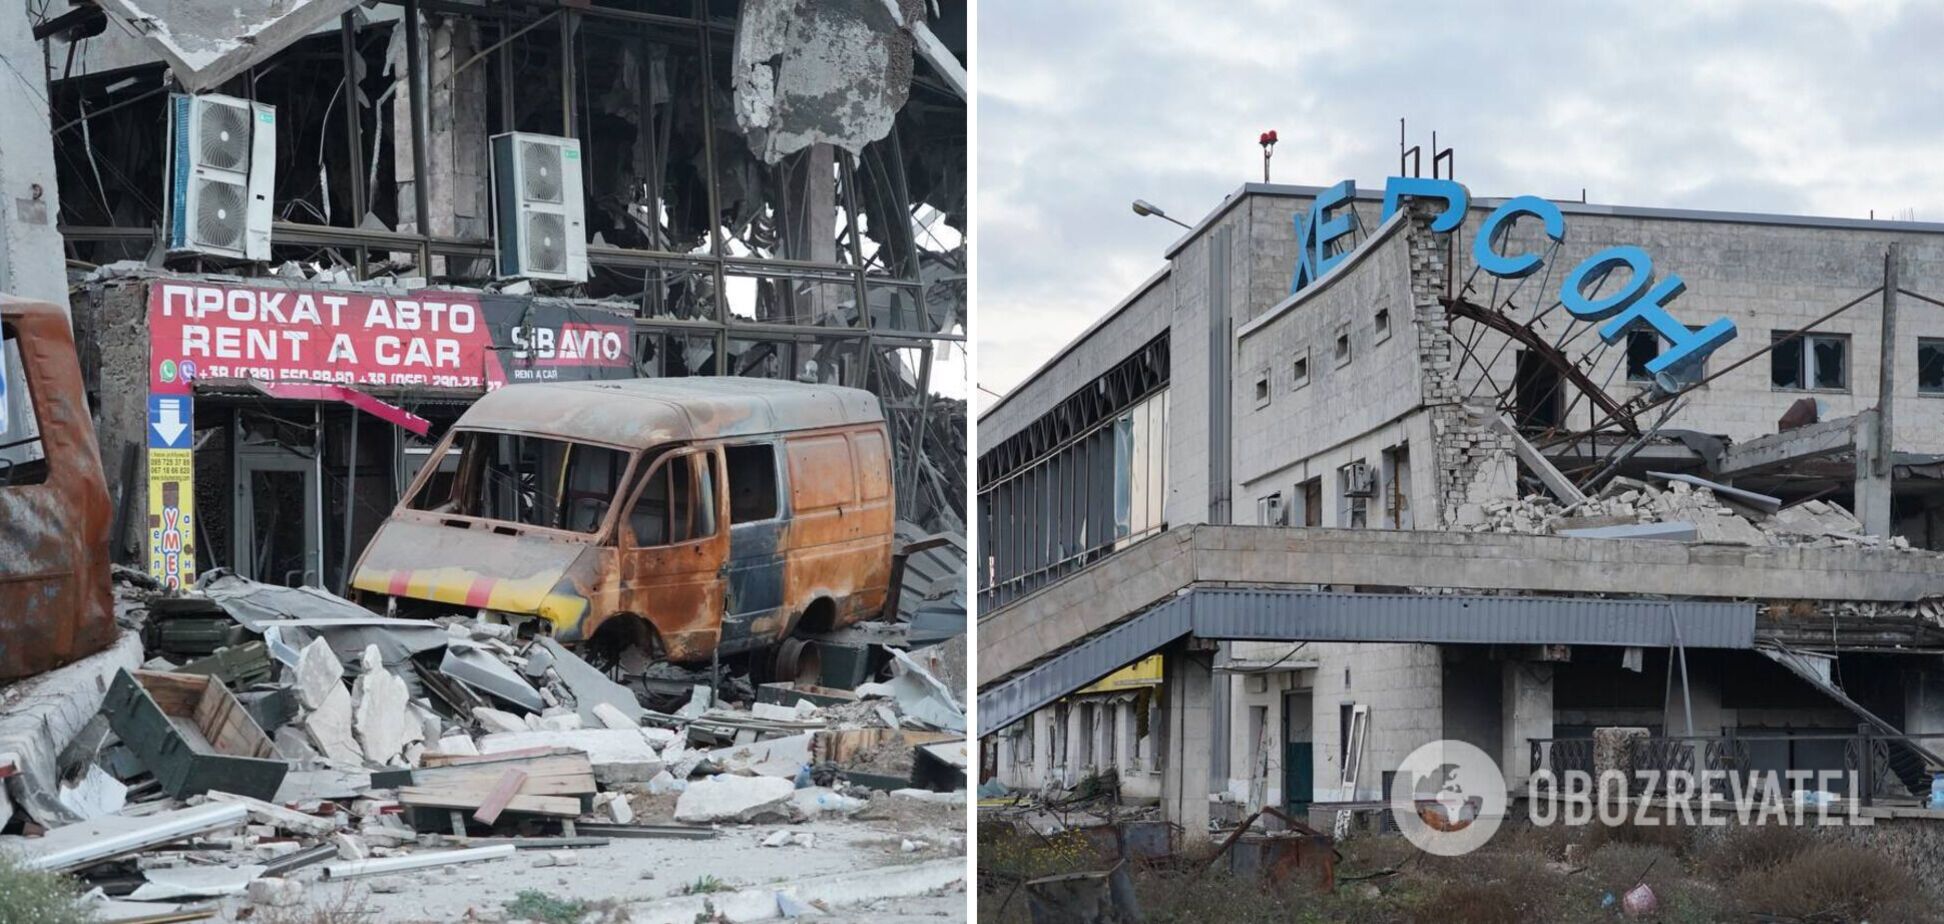 Руїни і згорілі авто: у мережі показали, який зараз вигляд має знаменитий аеропорт 'Херсон' у Чорнобаївці. Фото 